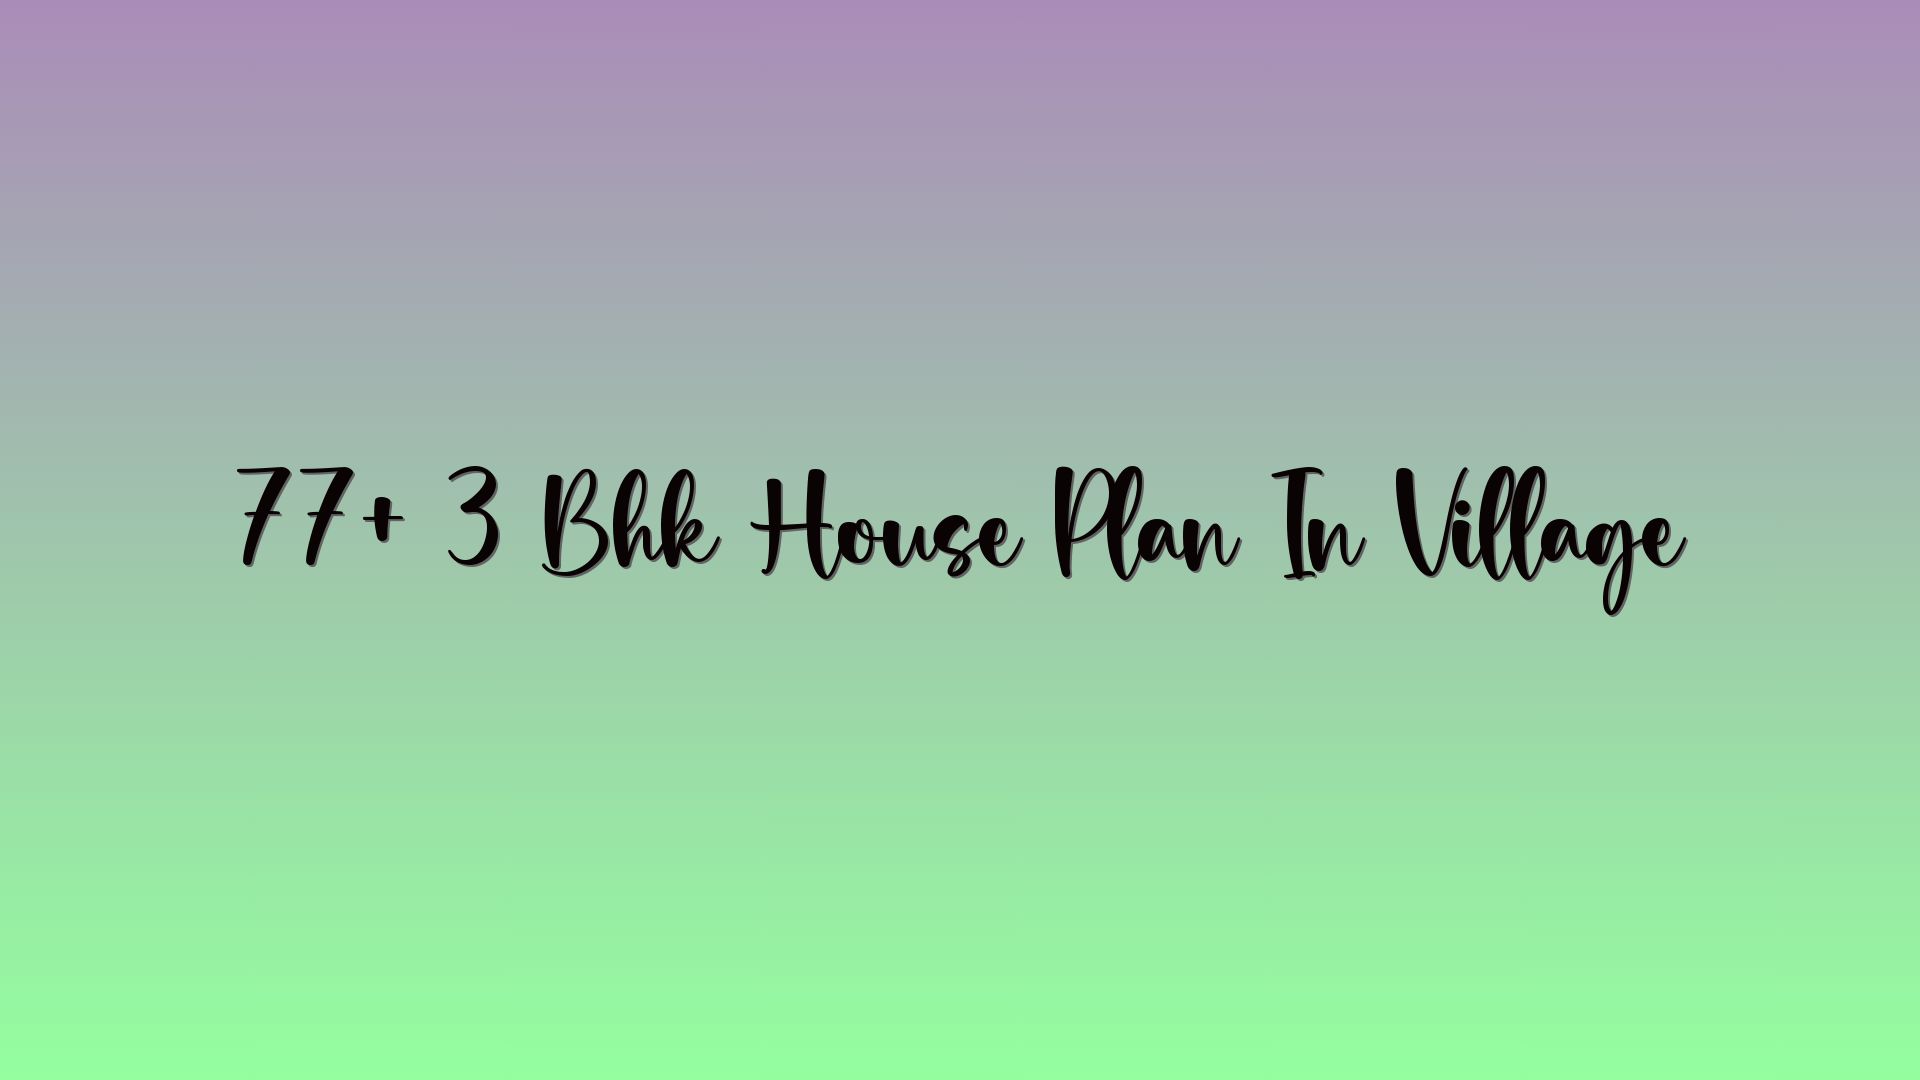 77+ 3 Bhk House Plan In Village